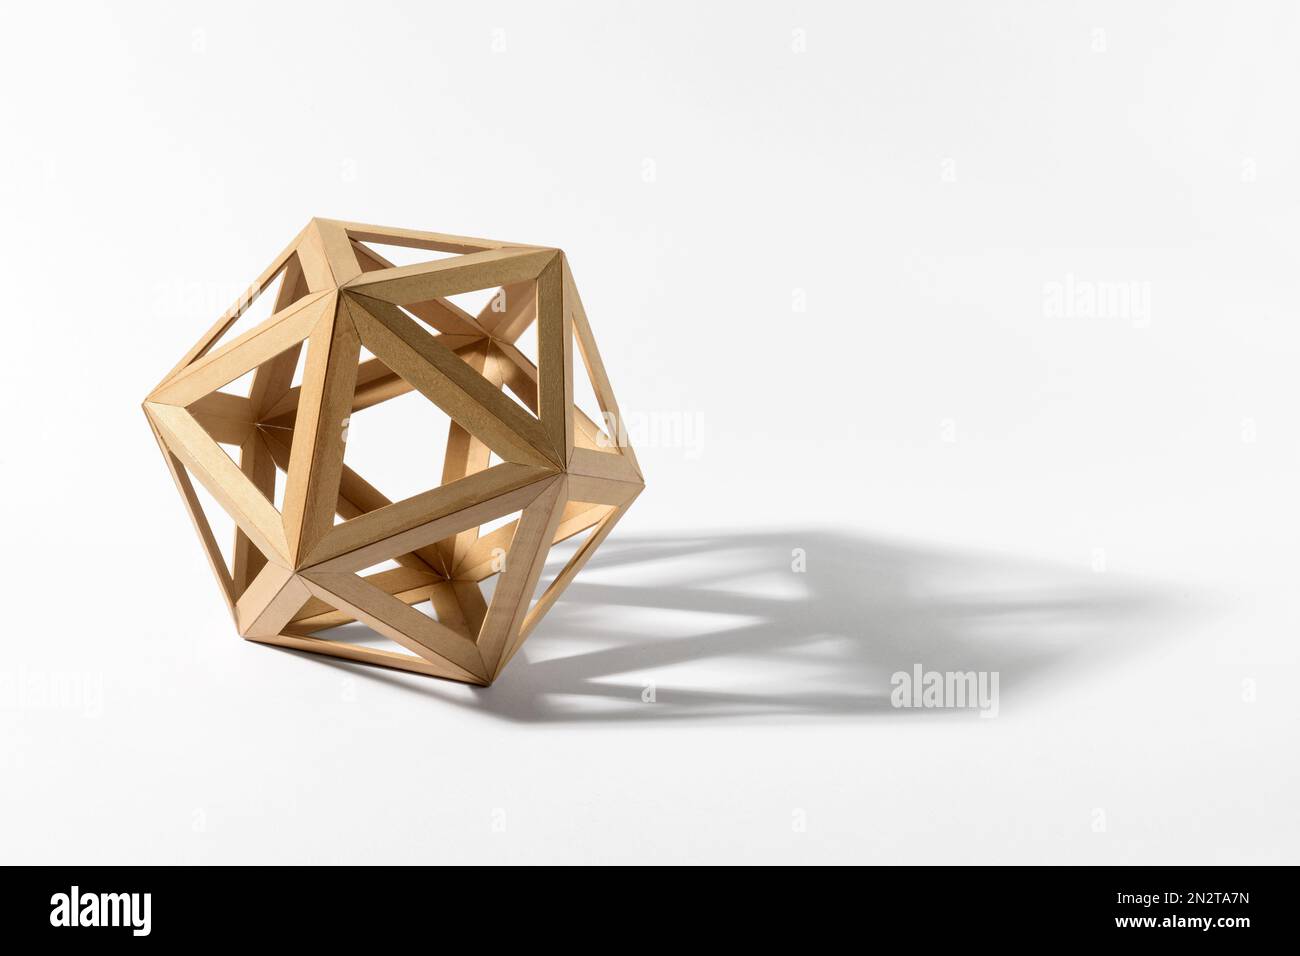 Forme d'icosaèdre solide platonique en bois clair moulé ombre sur fond gris Banque D'Images